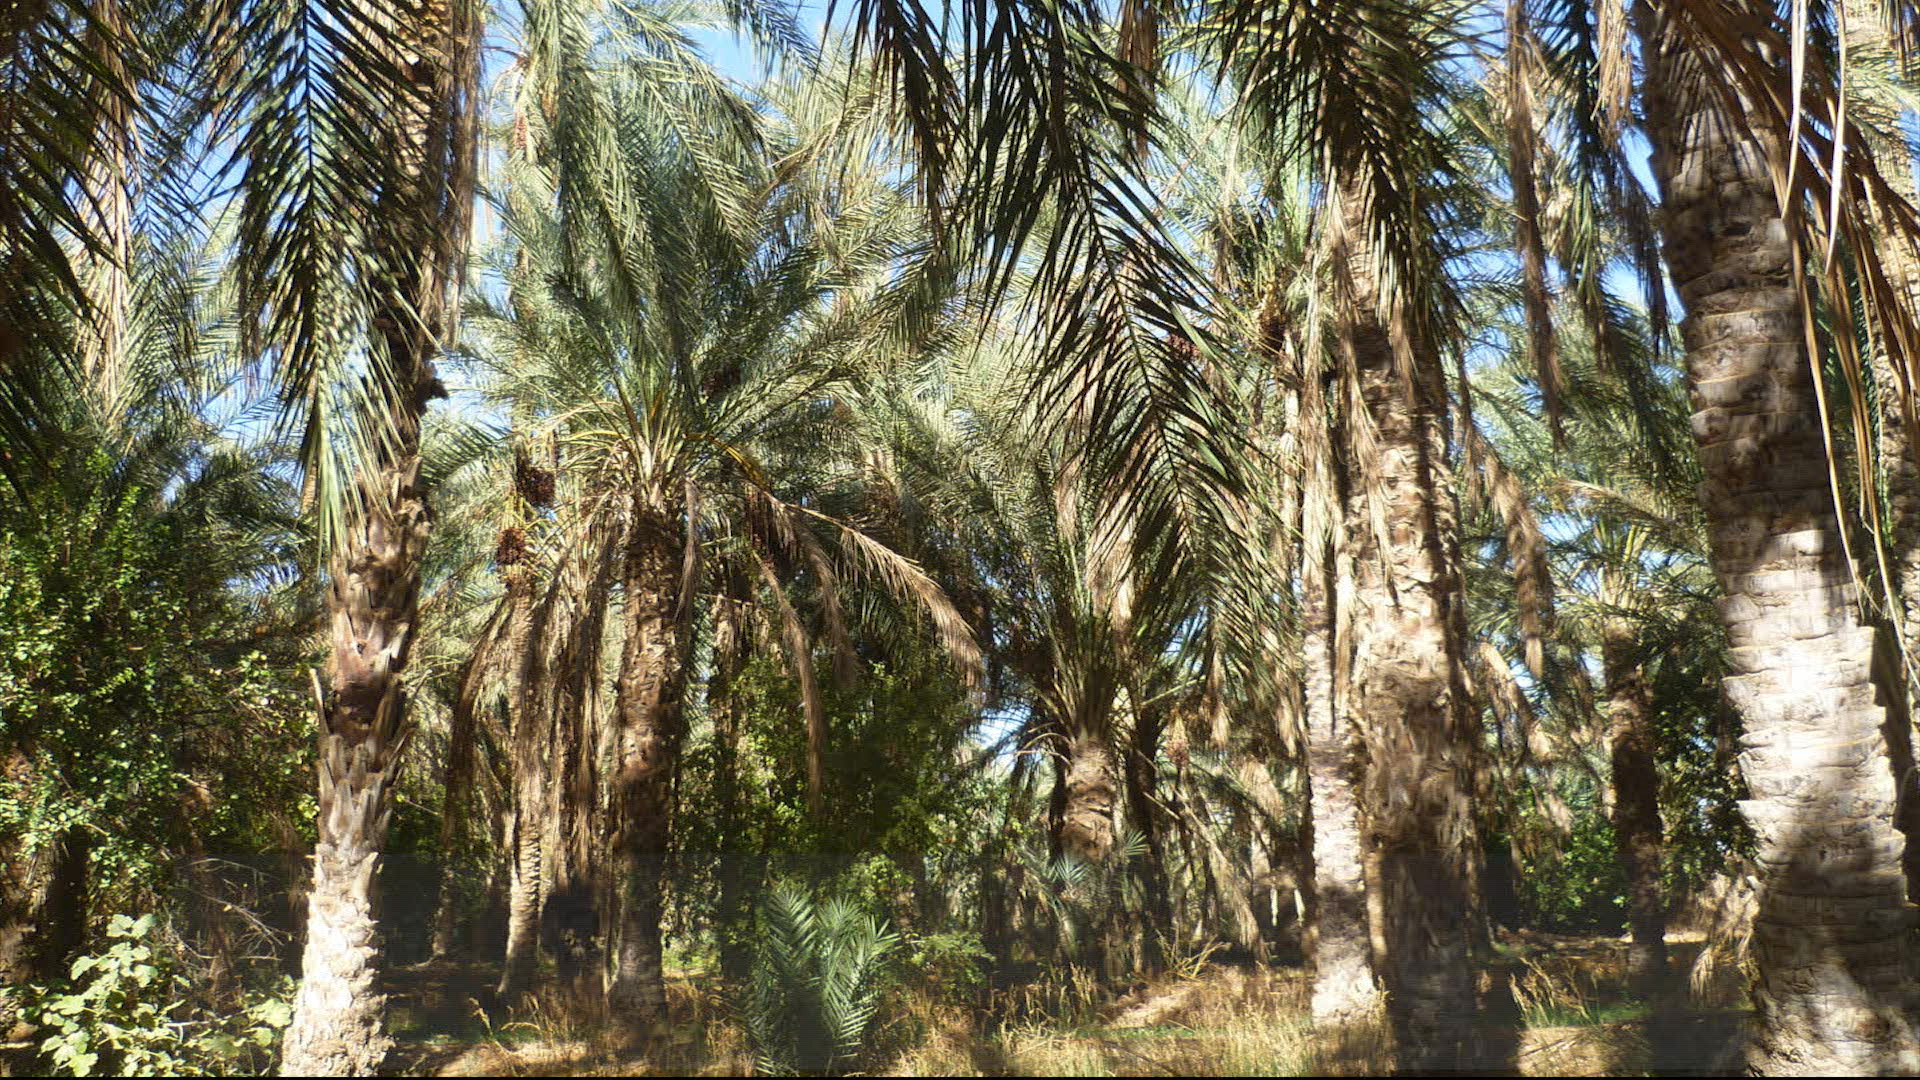 La Palmeraie / The Palm Grove 
(A. Boukhallat, Beldet Amor (Touggourt, Algérie))